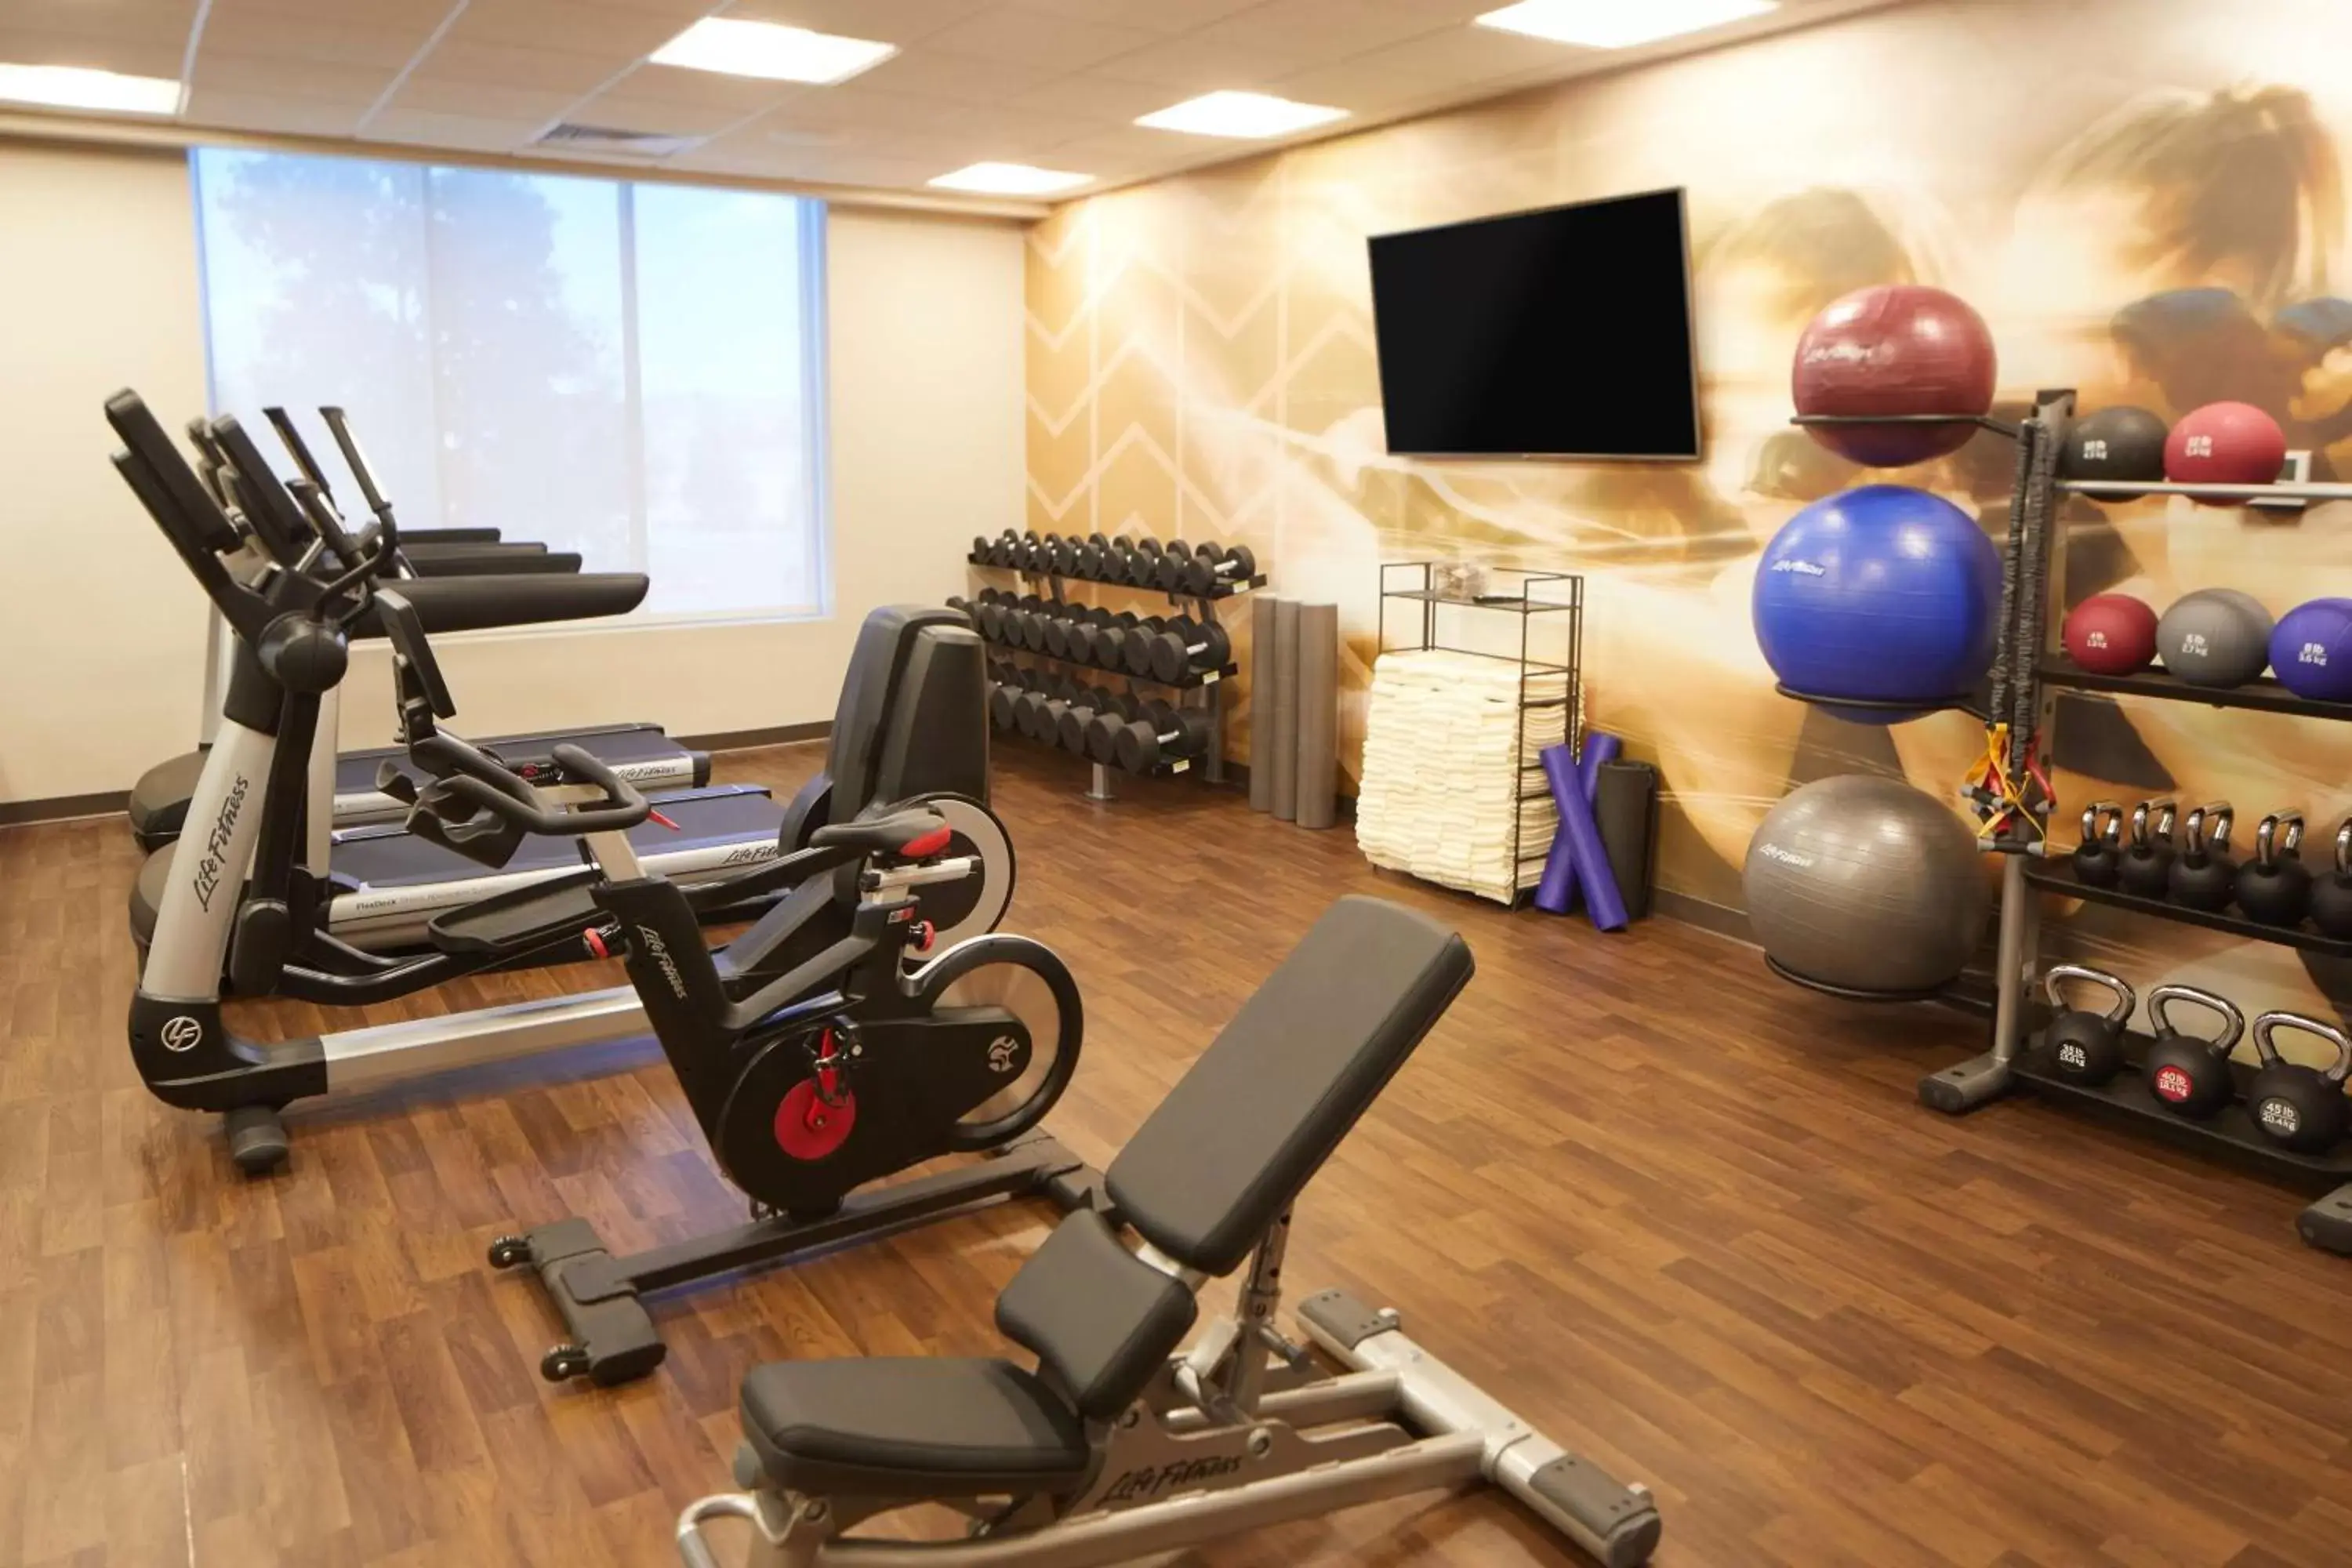 Fitness centre/facilities, Fitness Center/Facilities in Hyatt Place Las Vegas at Silverton Village